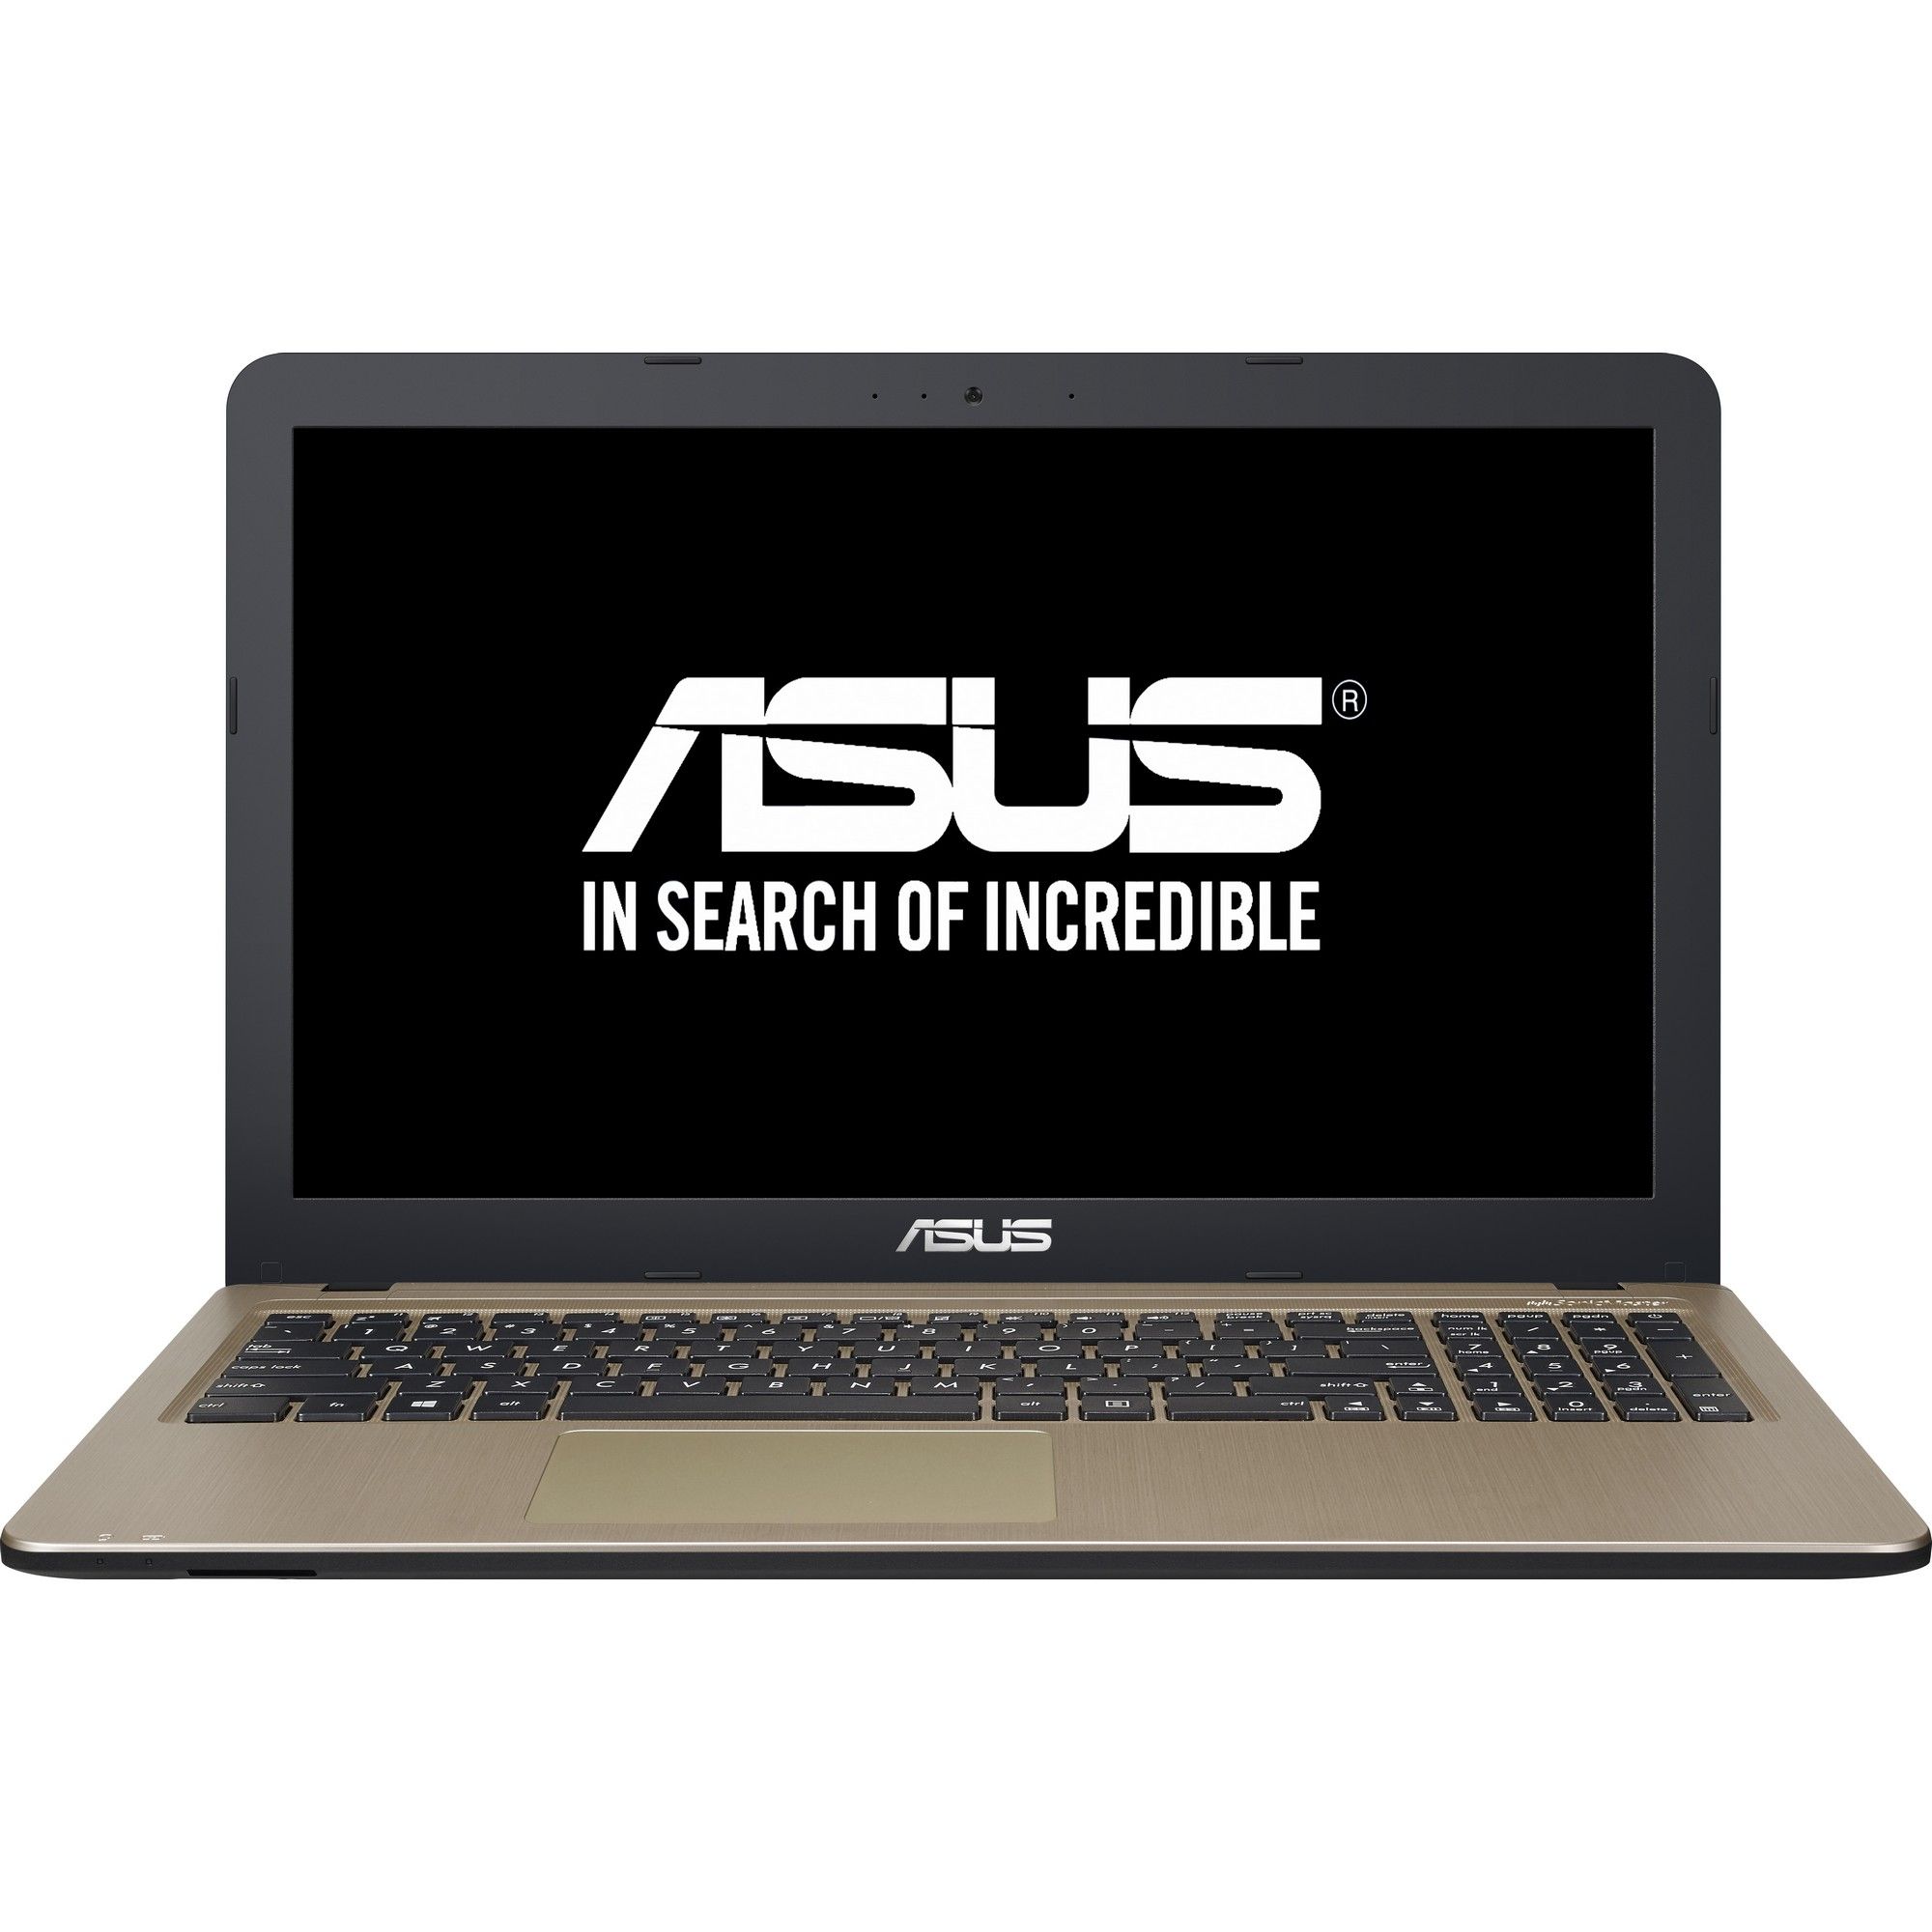  Laptop Asus A540LJ-XX612D, Intel Core i3-5005U, 4GB DDR3, HDD 500GB, nVidia GeForce 920M 2GB, Free DOS 